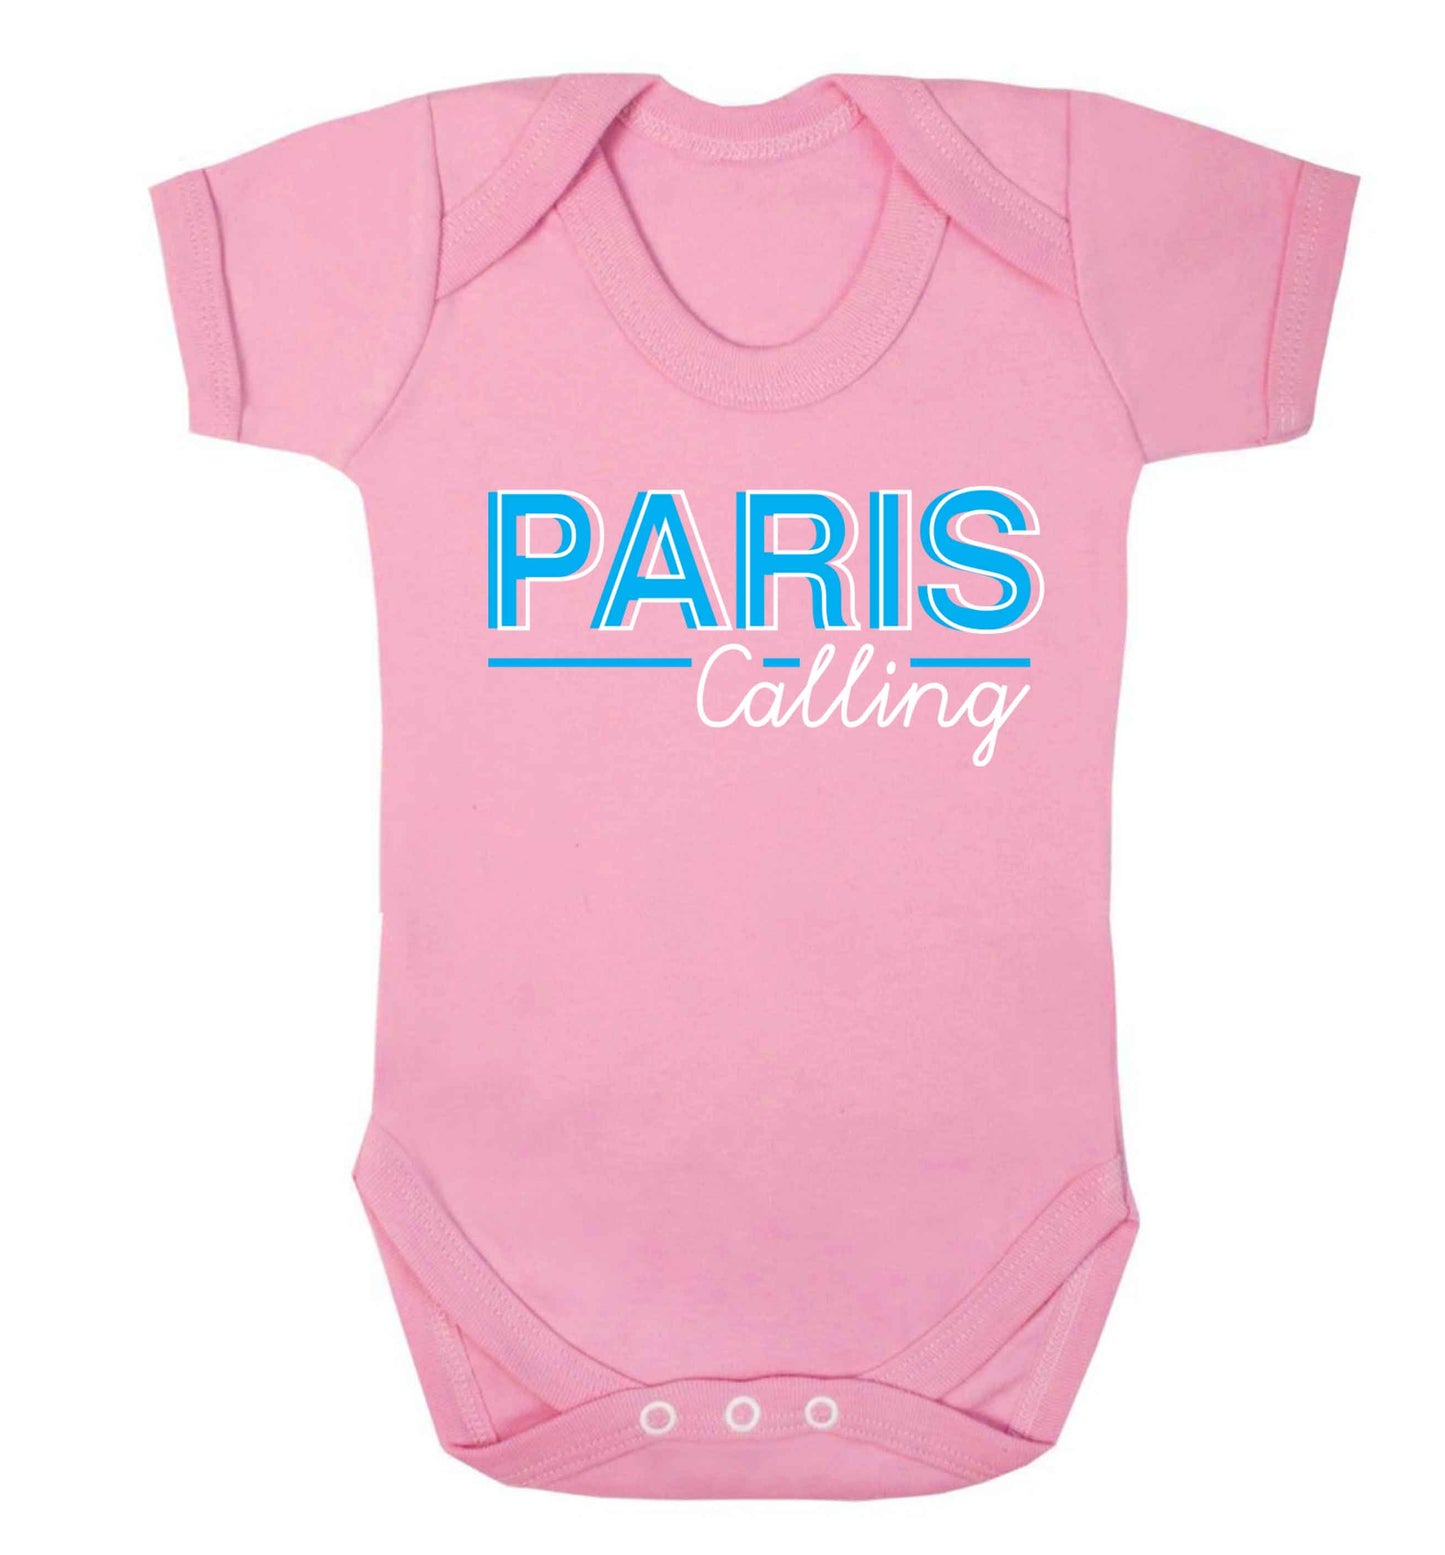 Paris calling Baby Vest pale pink 18-24 months